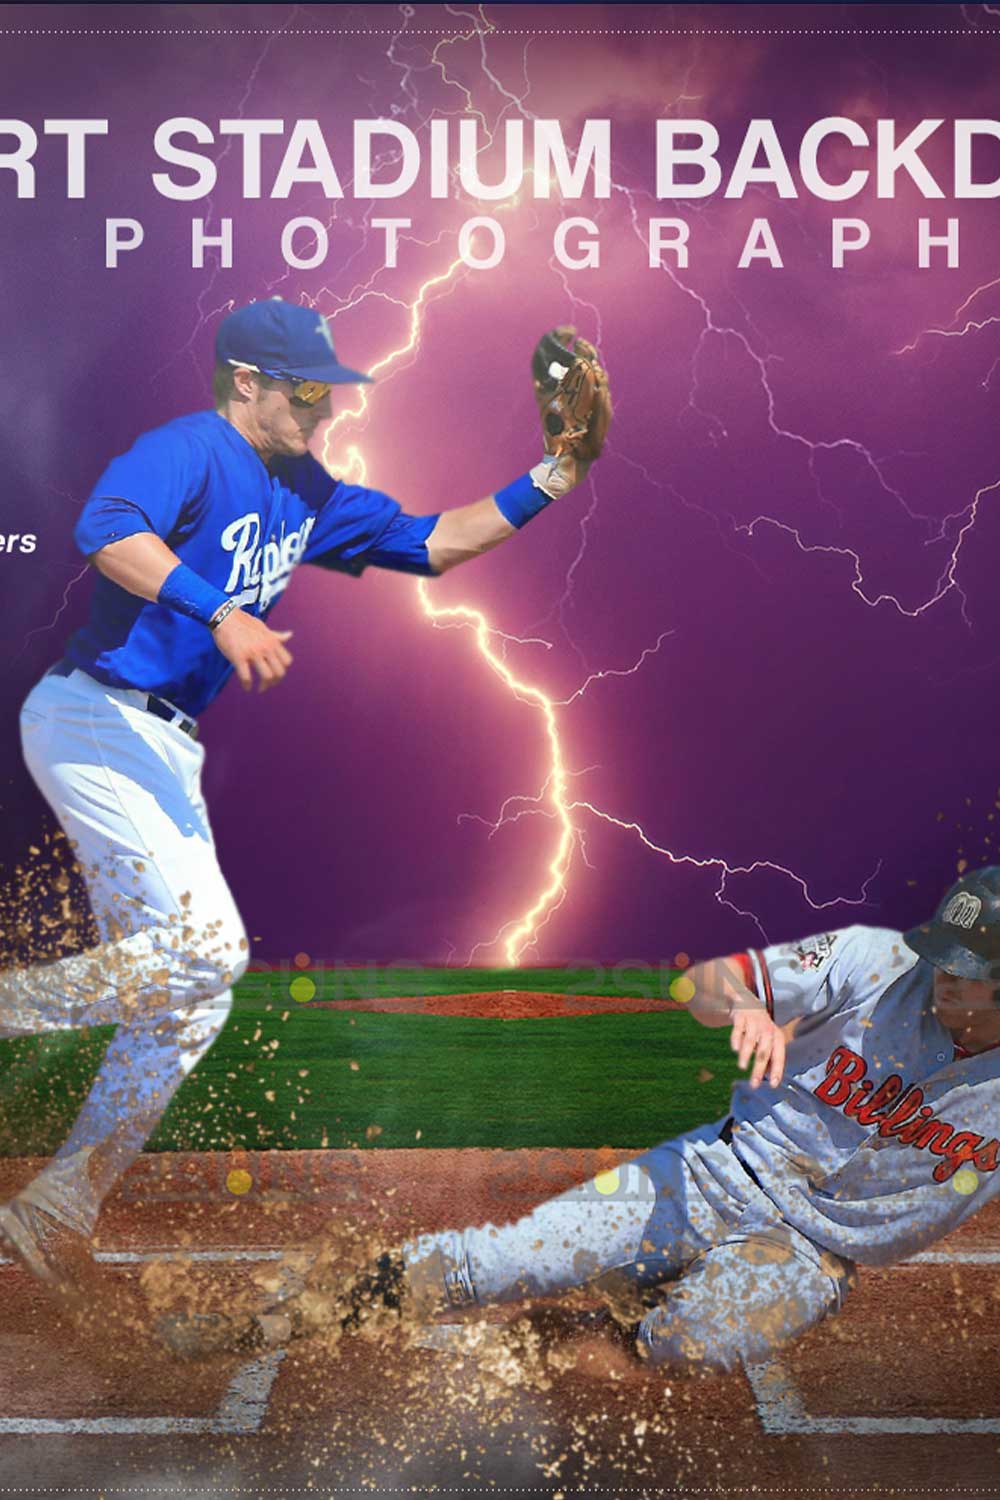 Baseball Amazing Backdrop Sports Digital Photoshop Overlay Pinterest Image.